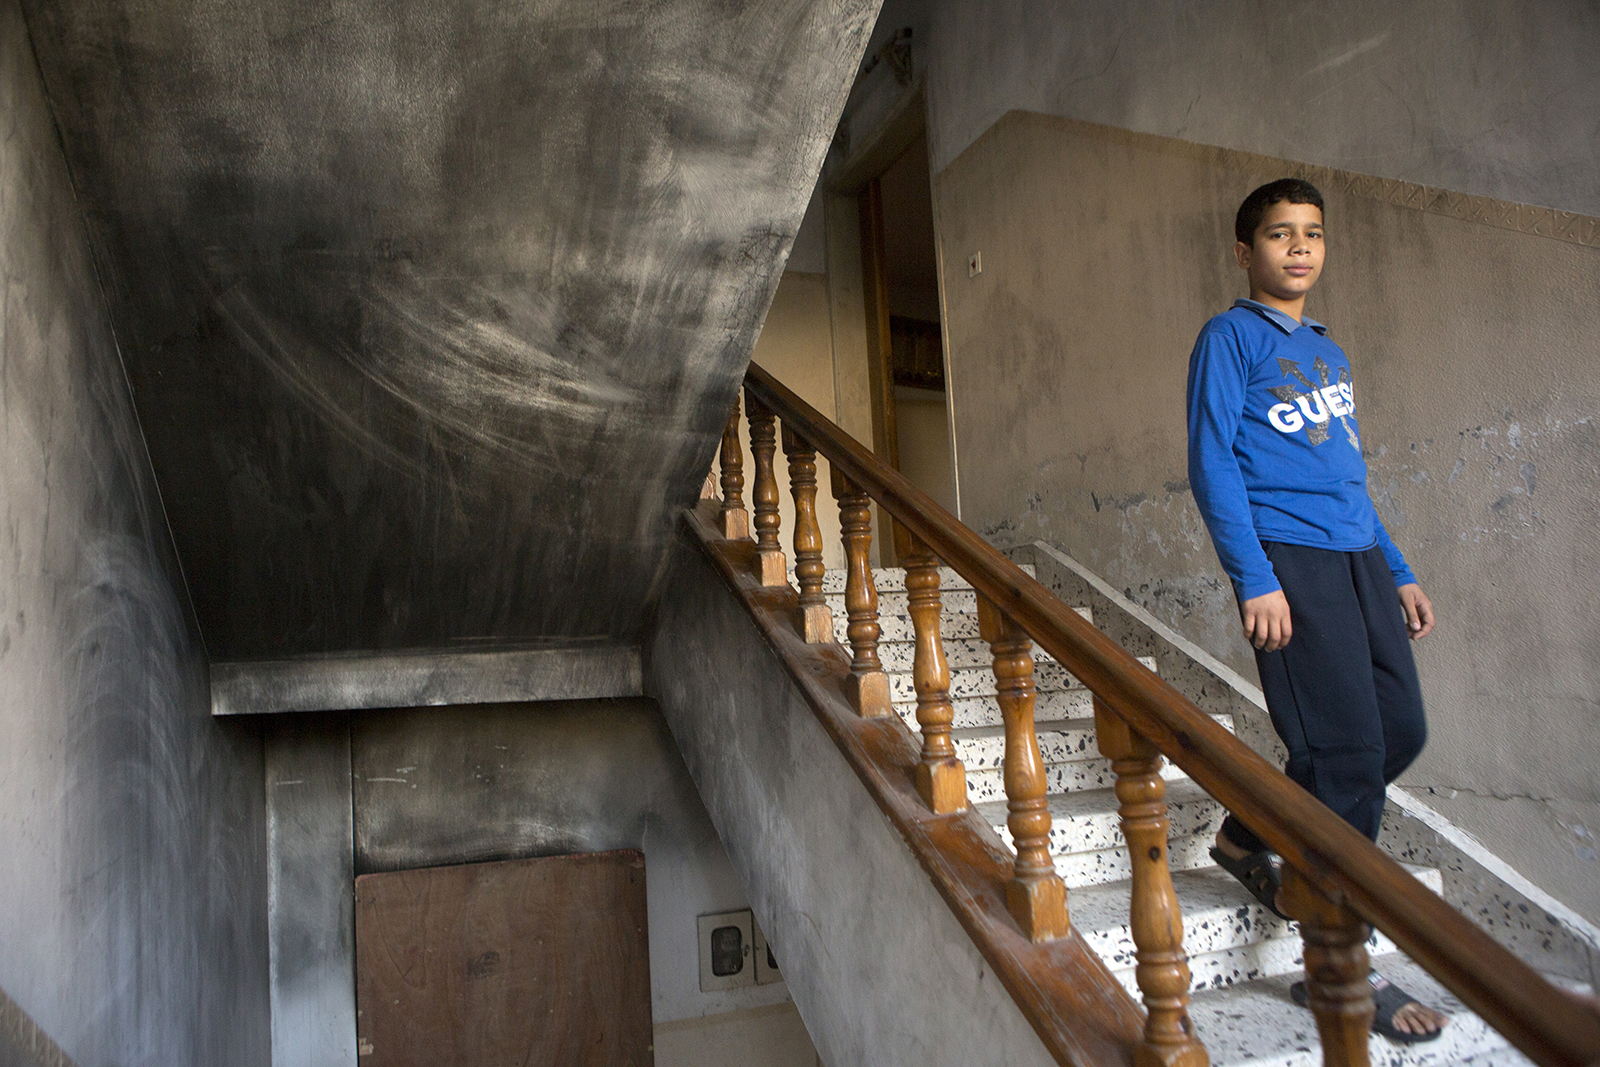 Ibrahim, Ismail, leurs parents et d'autres membres de la famille vivent toujours dans la maison en partie brûlée et instable.
